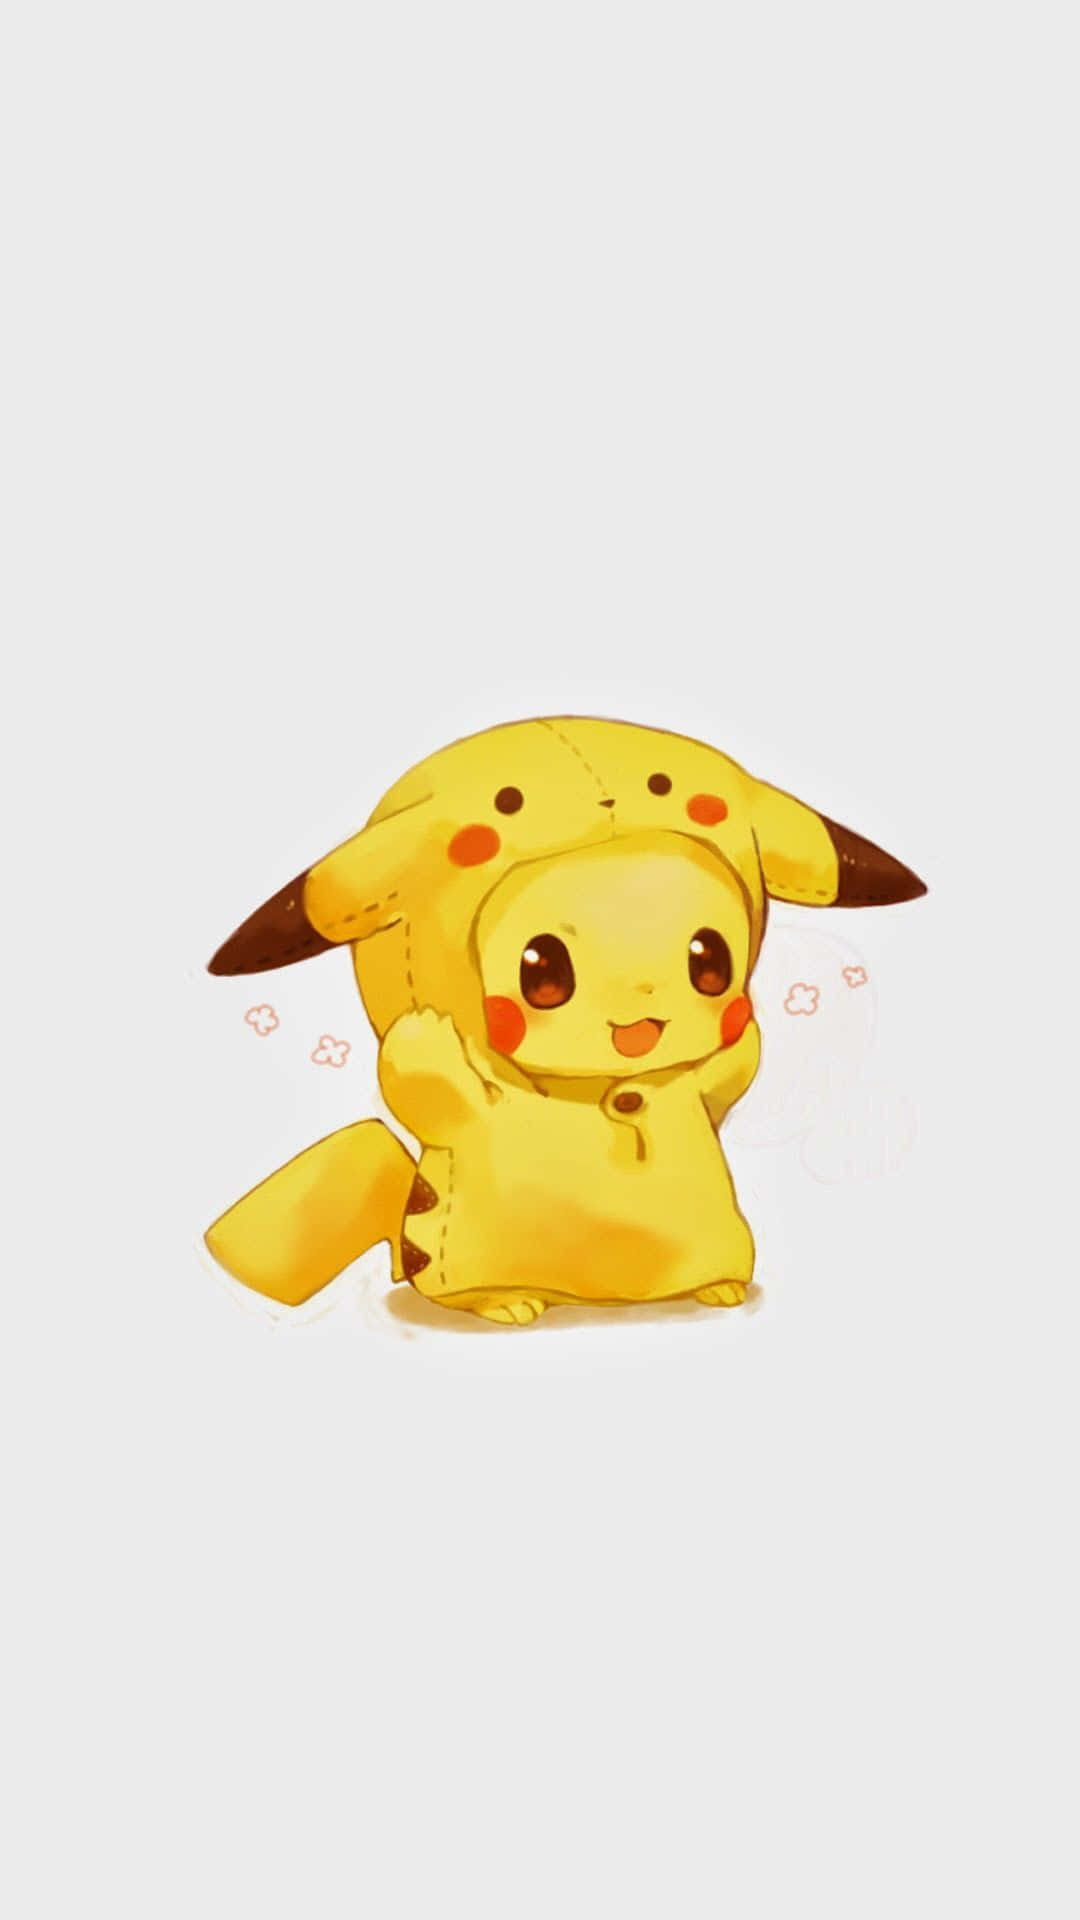 Pikachu Wallpapers - Pikachu Wallpapers Wallpaper